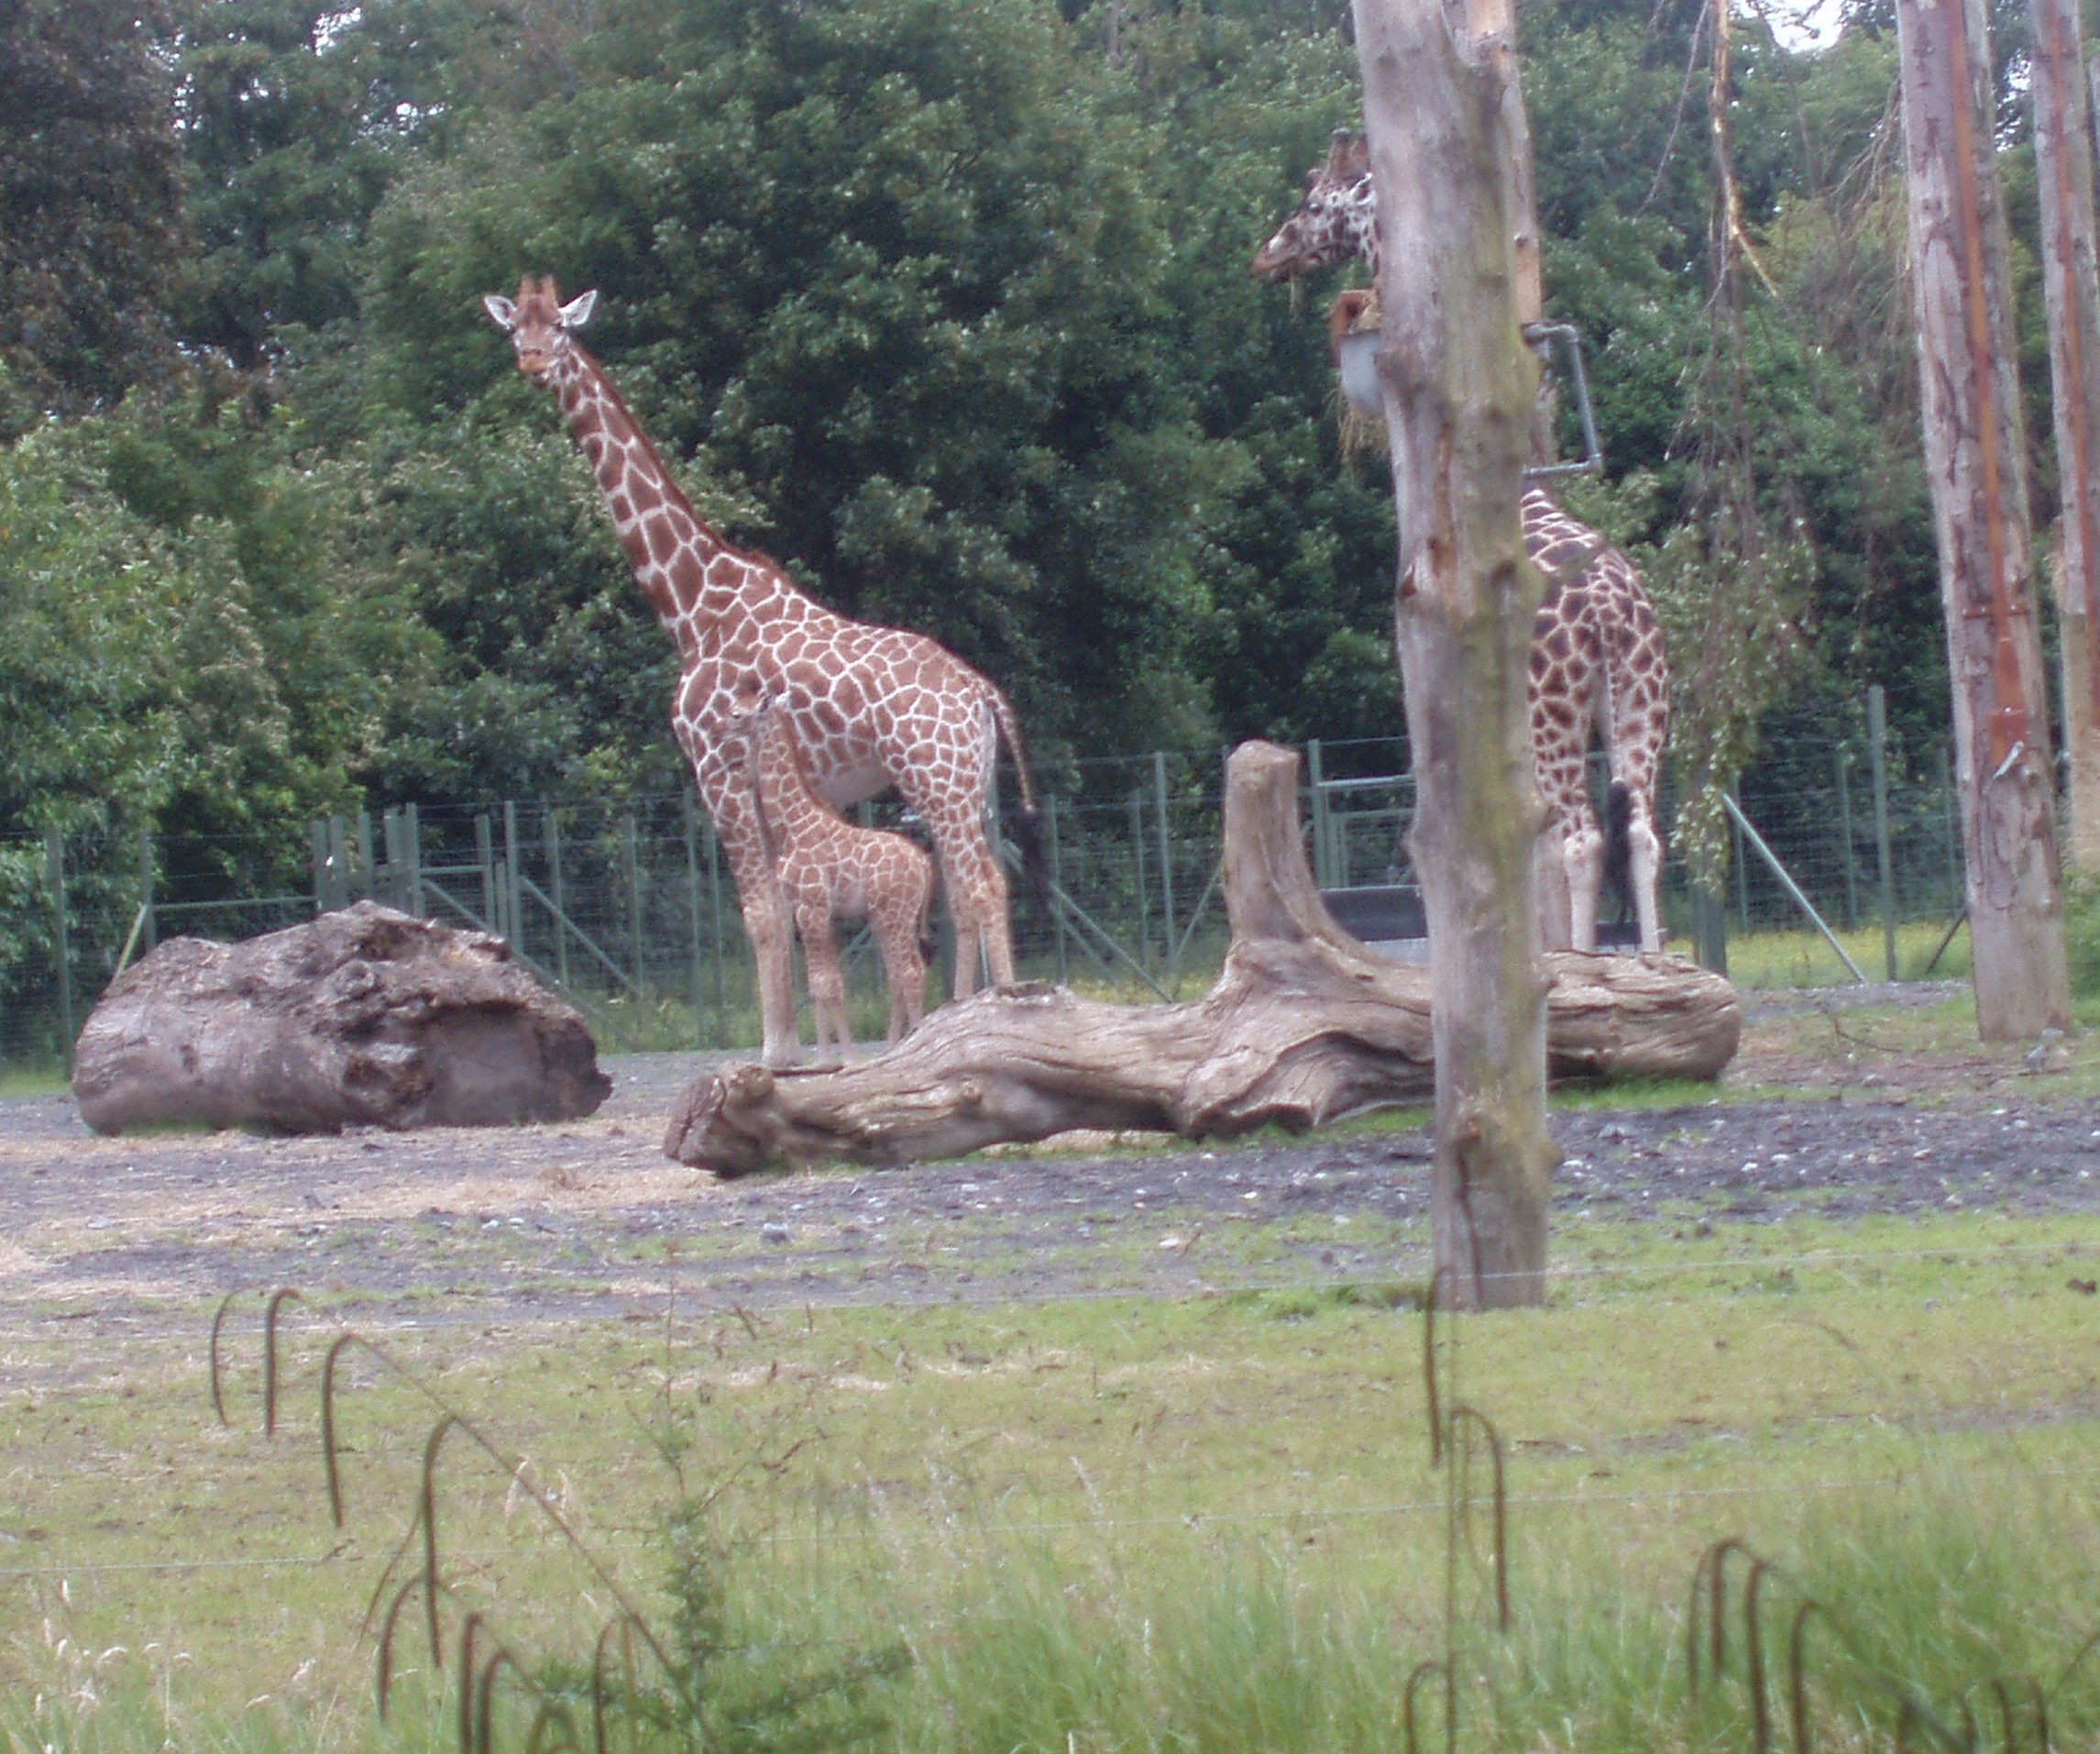 Dublin Zoo